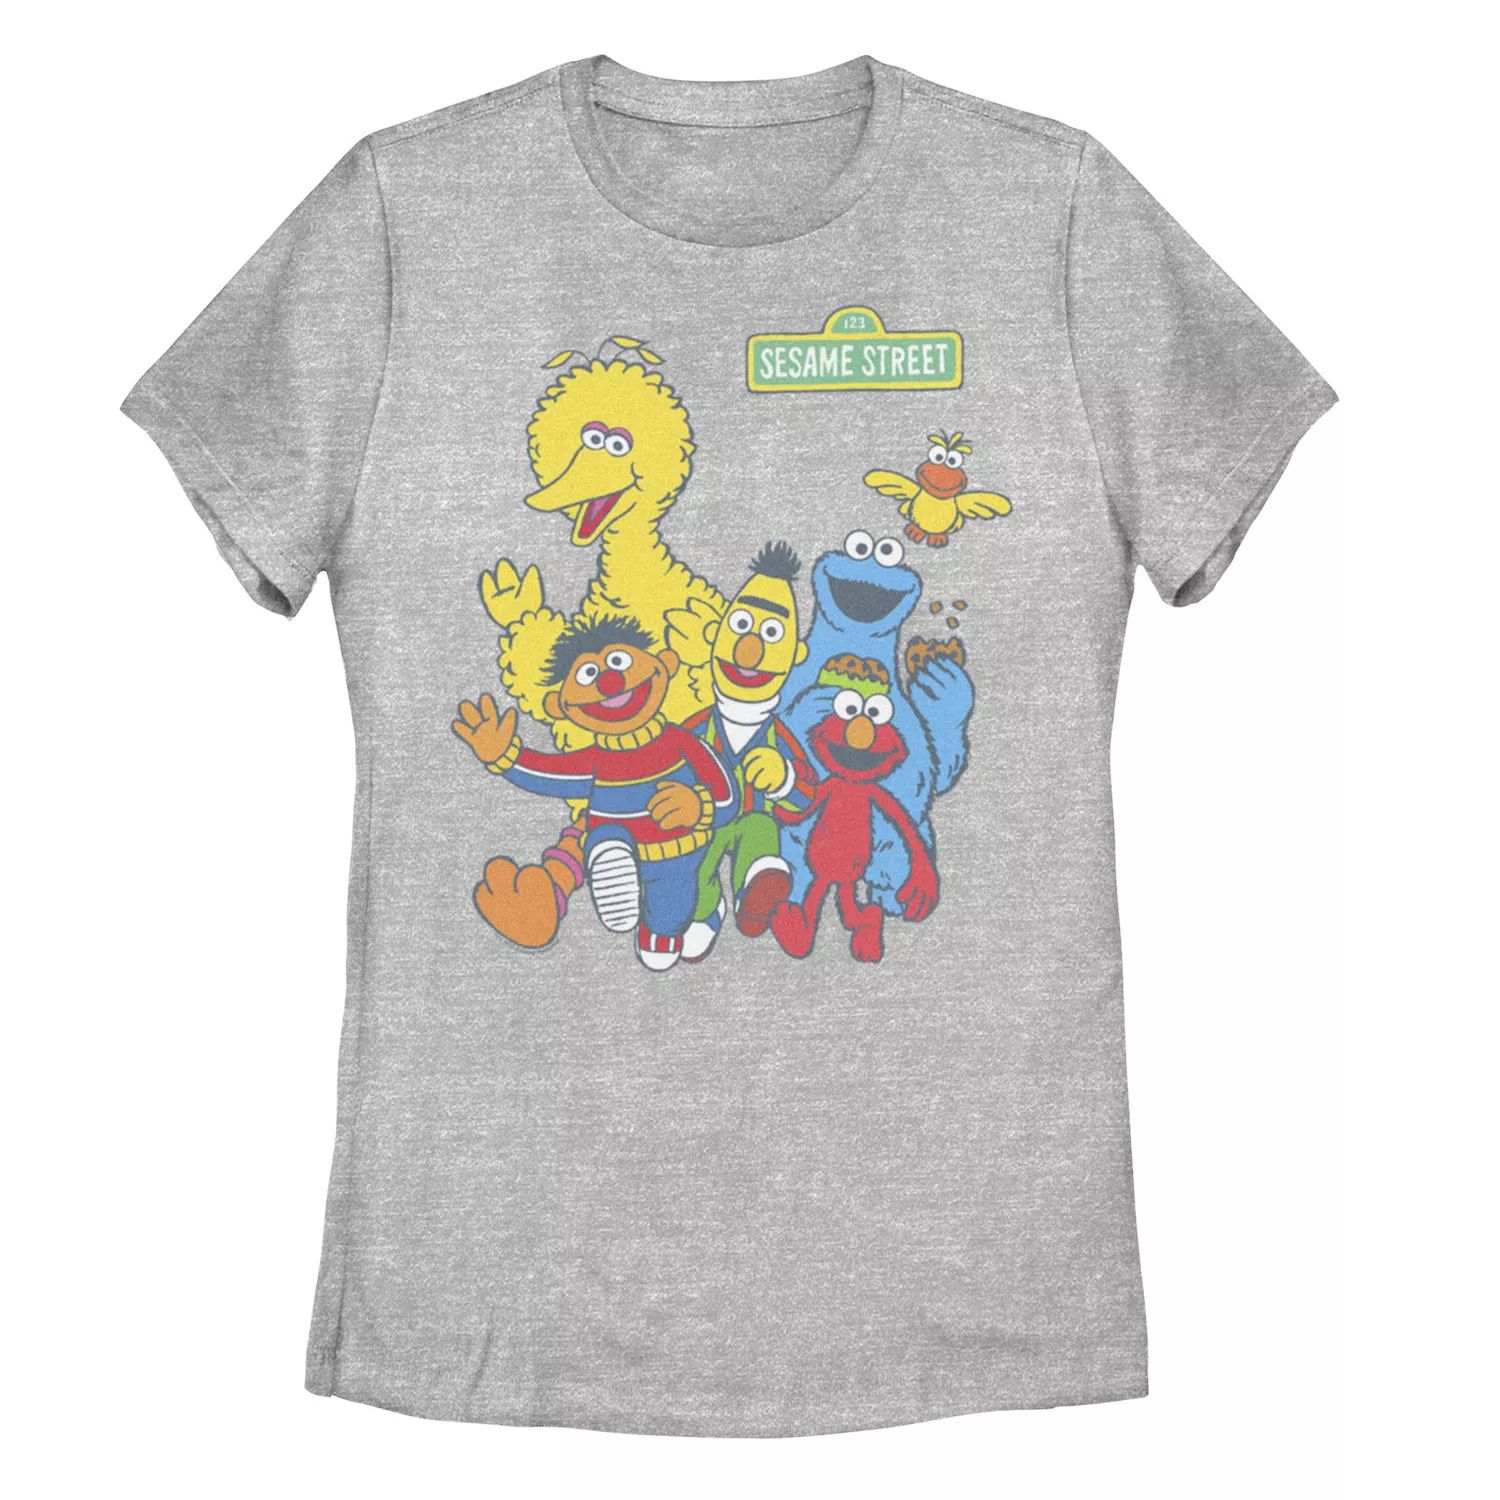 Детская футболка с рисунком Элмо и друзей «Улица Сезам» Licensed Character